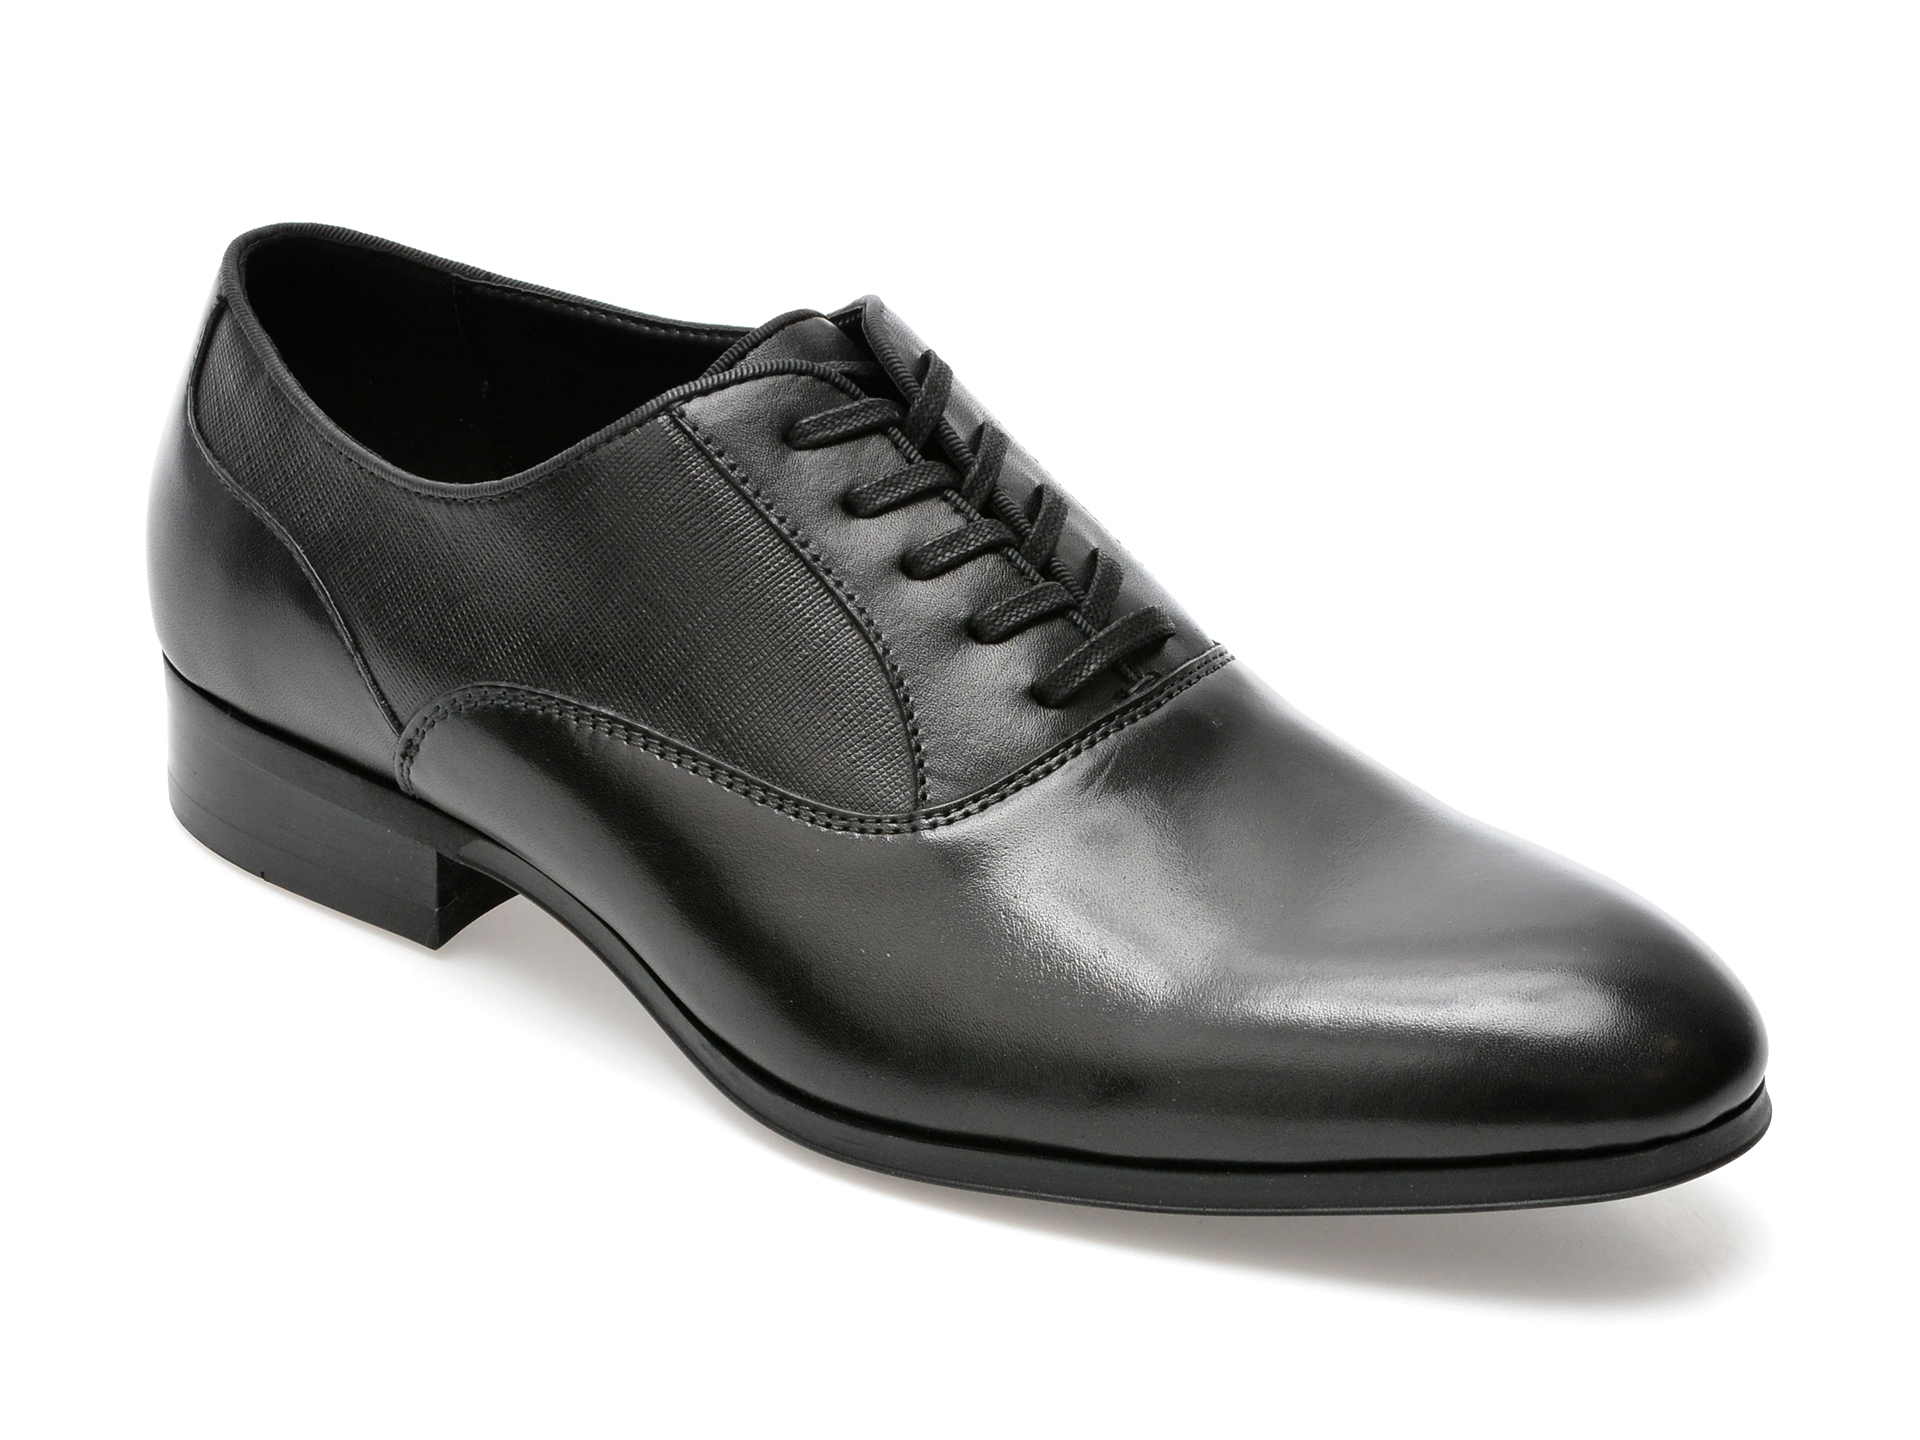 Pantofi ALDO negri, RIDGE009, din piele naturala /barbati/pantofi